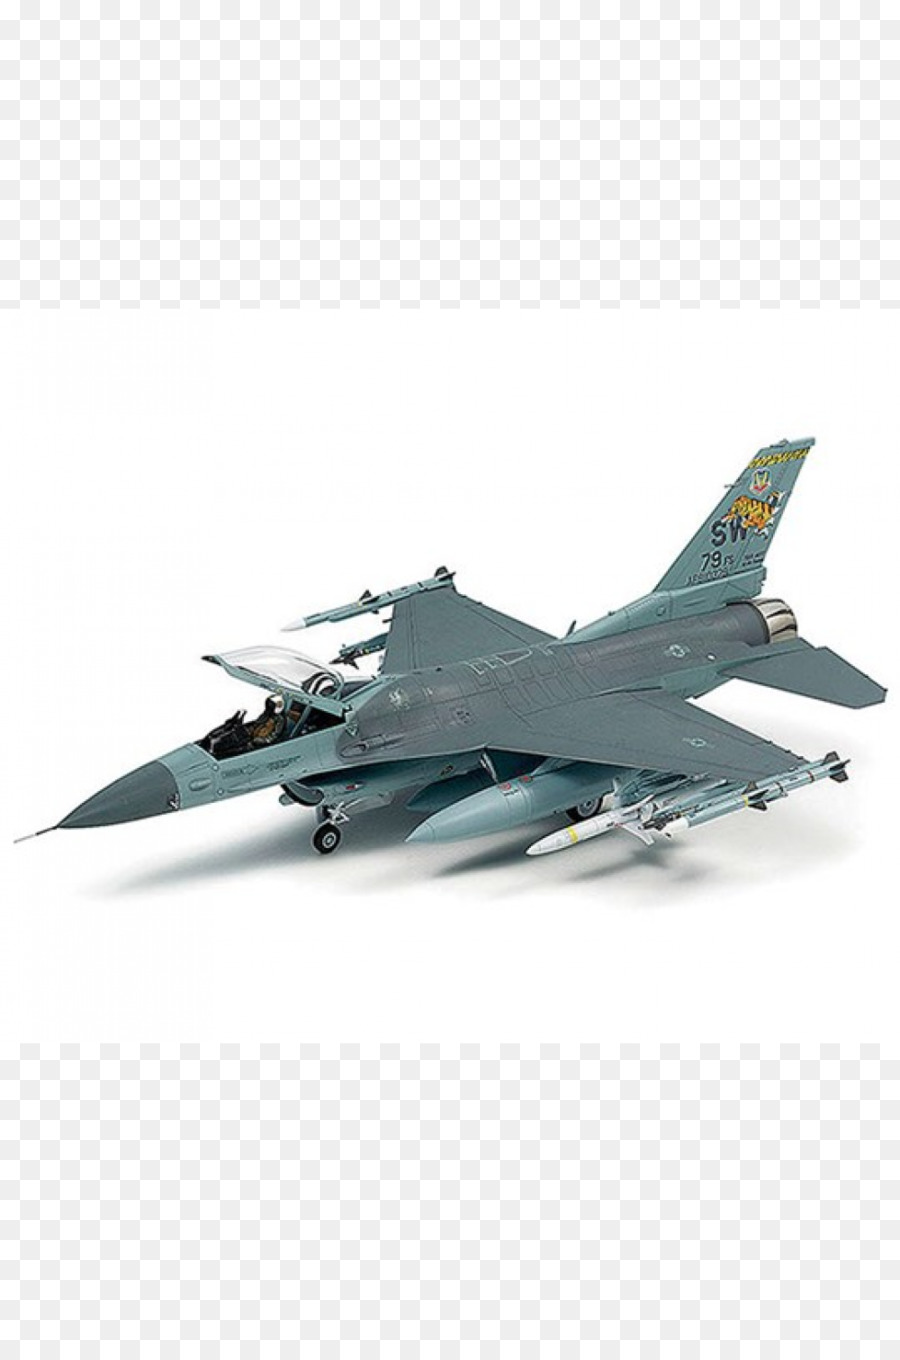 F-16 chiến Đấu Falcon Nhựa mô hình máy Bay Lockheed Martin F-22 Raptor 1:48 quy mô - máy bay